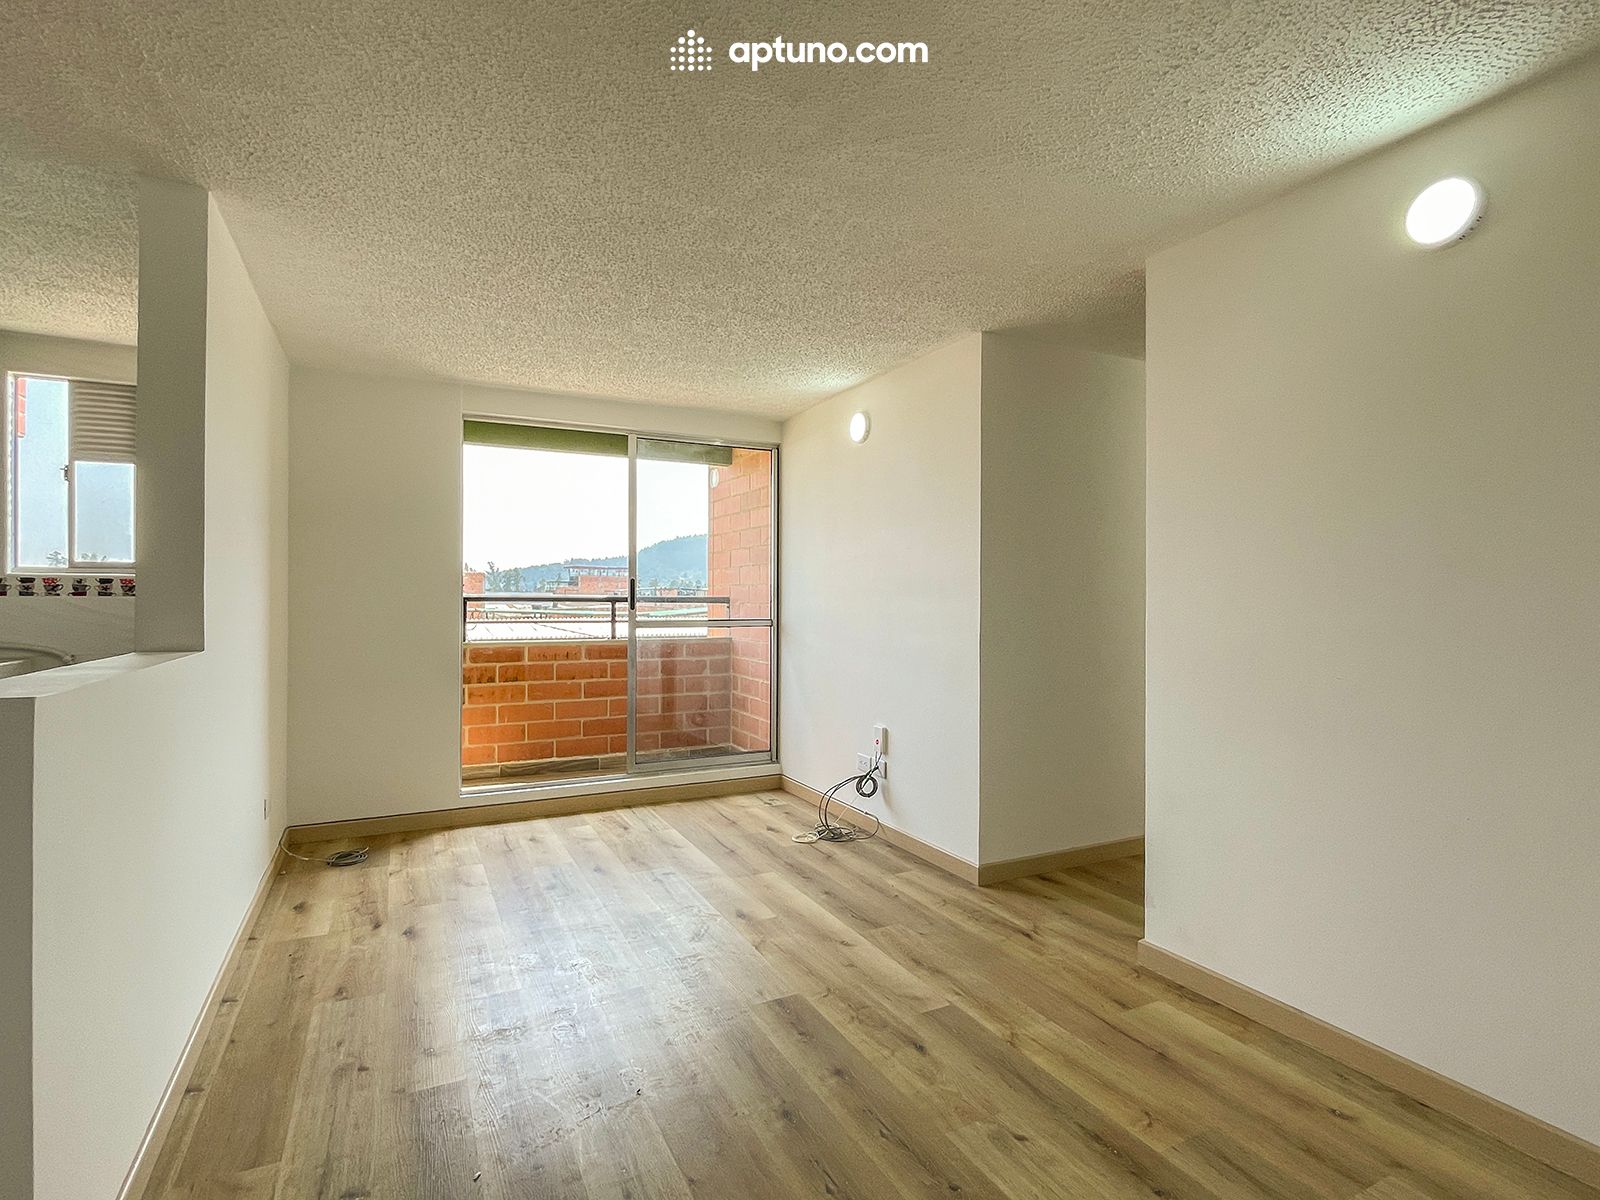 Apartamento en arriendo Madrid 57 m² - $ 900.000